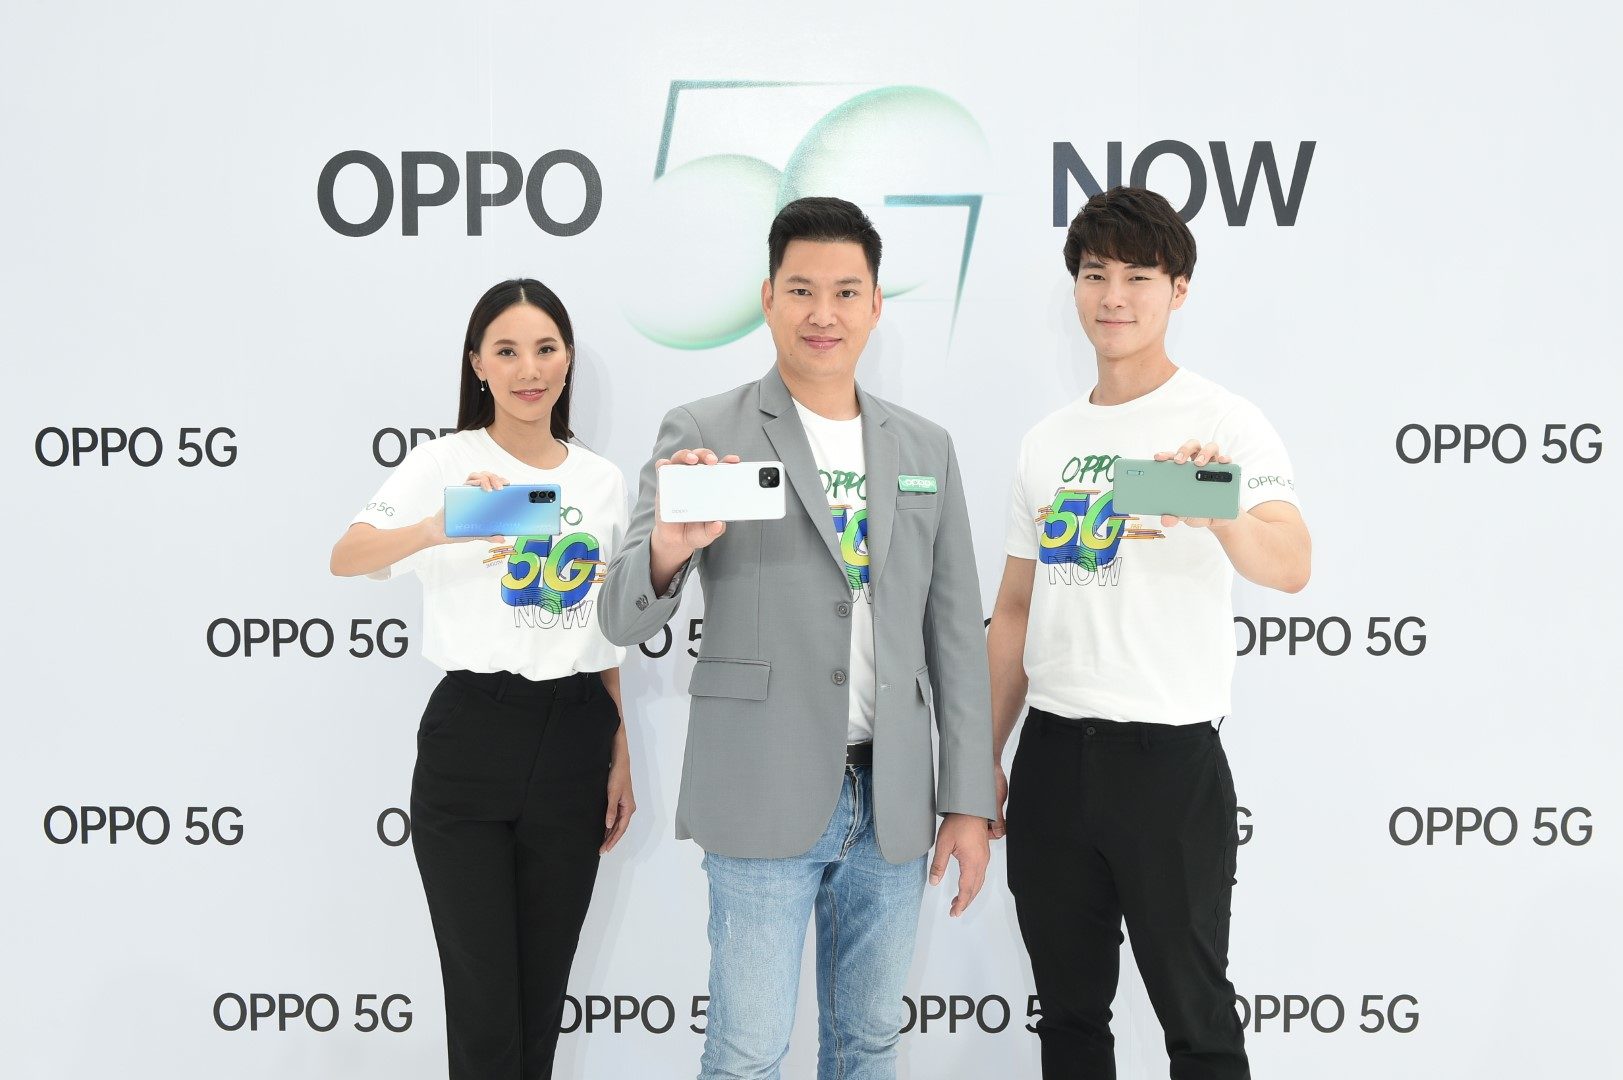 OPPO เปิดเกมรุกลุยตลาด 5G ในไทย ส่งสมาร์ทโฟน 5G ซีรีส์ 3 รุ่นใหม่ ครอบคลุมทุกระดับราคา